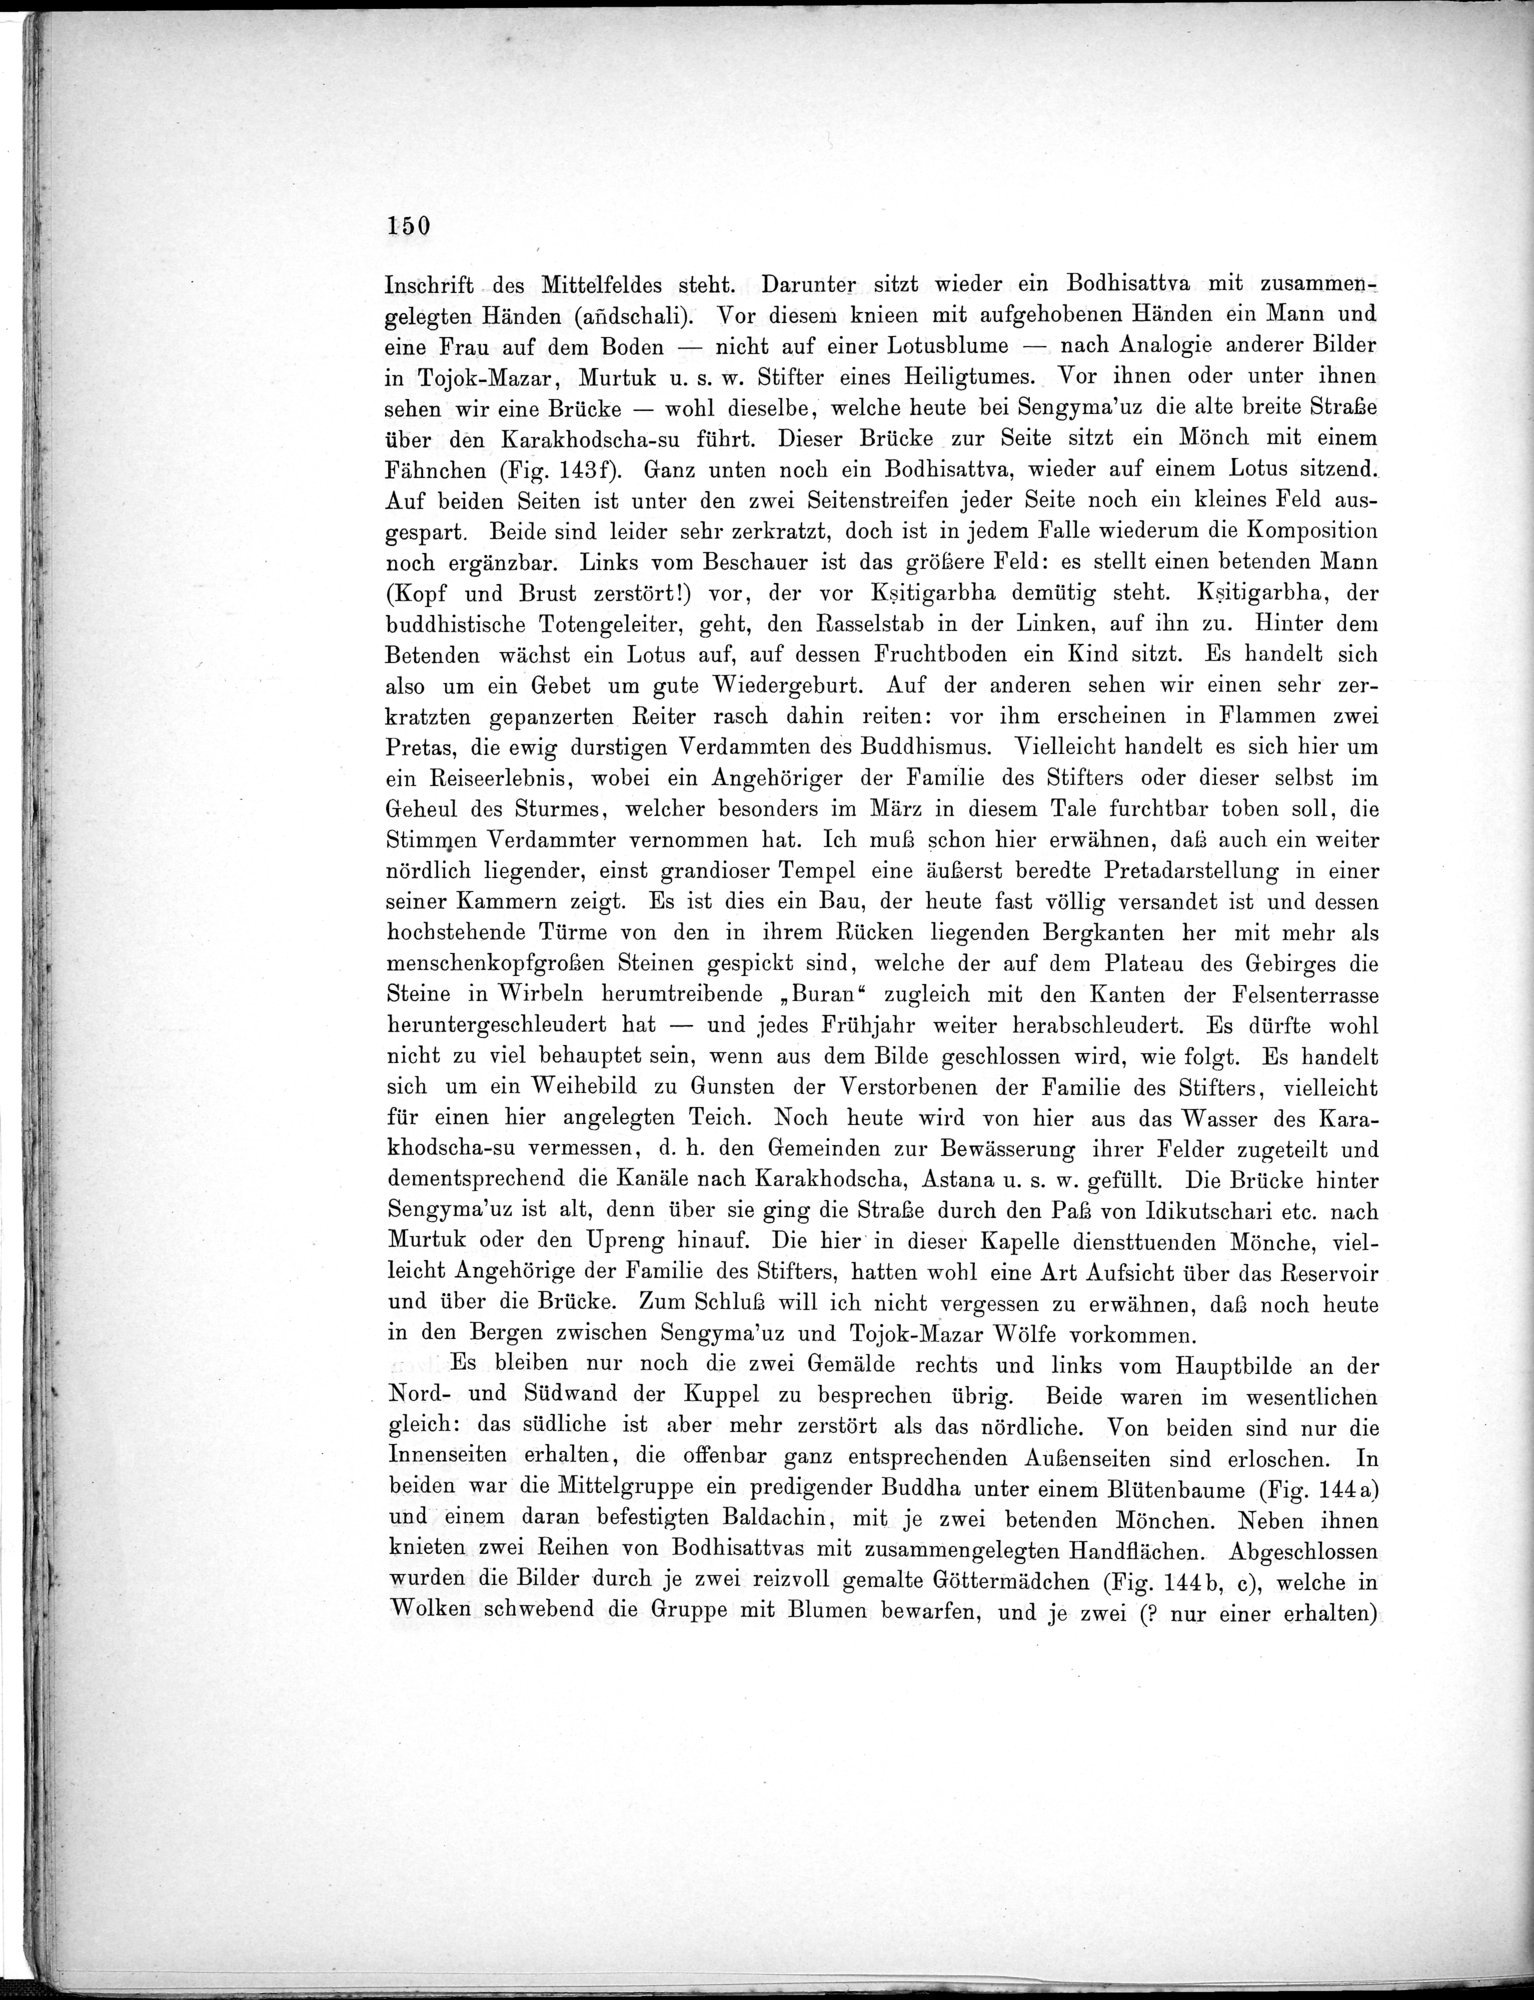 Bericht über archäologische Arbeiten in Idikutschari und Umgebung im Winter 1902-1903 : vol.1 / Page 160 (Grayscale High Resolution Image)